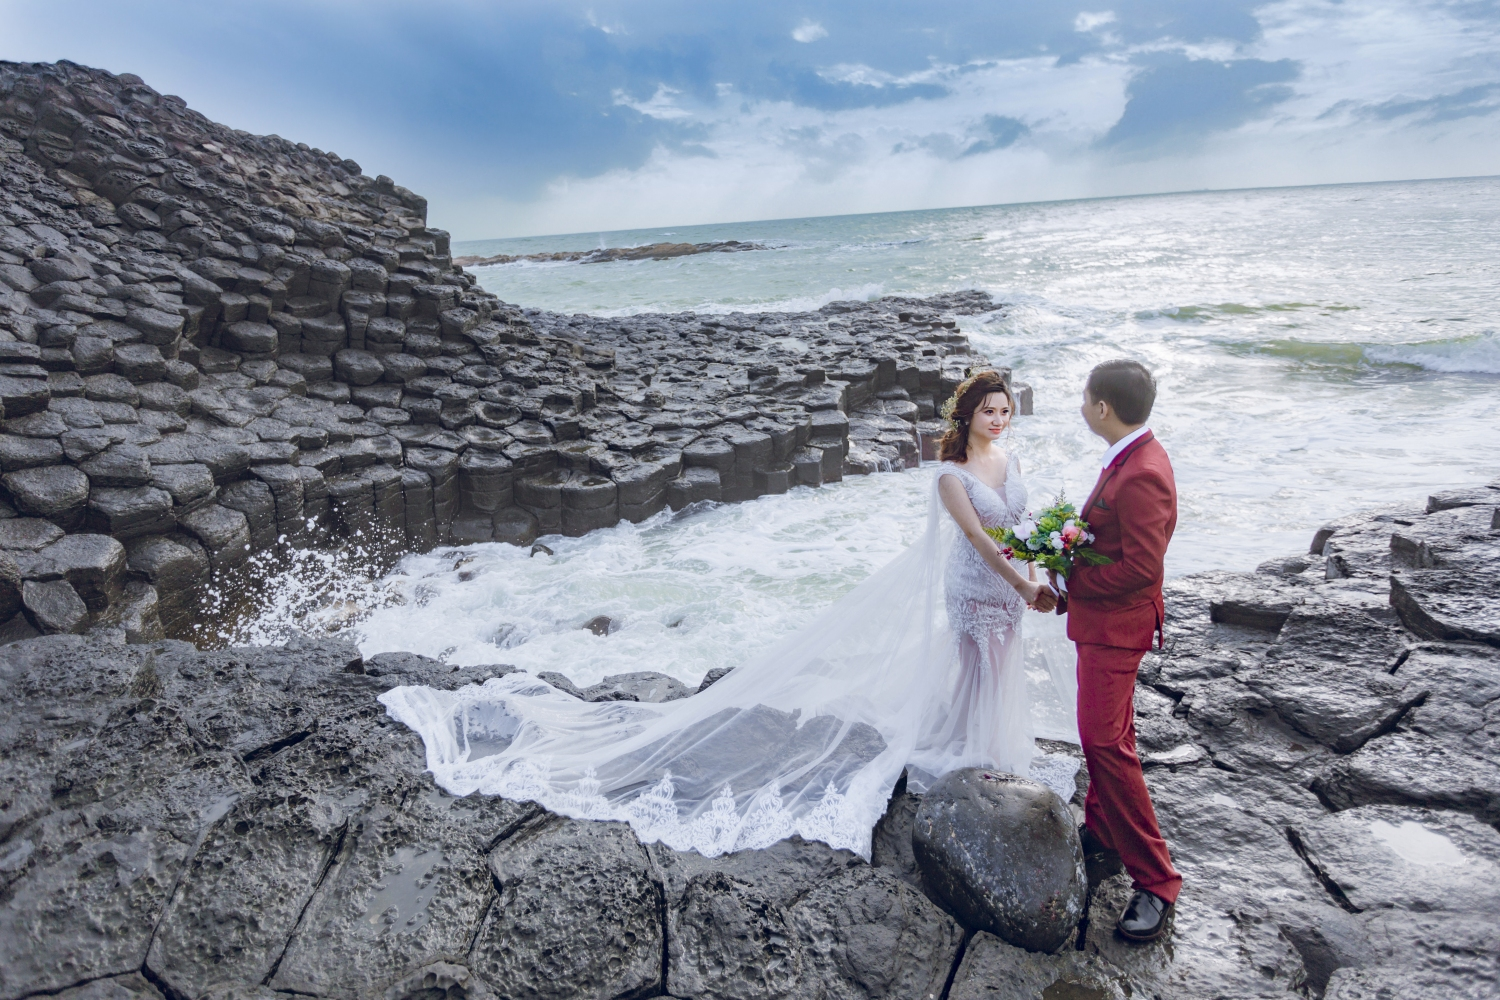 Chúc mừng đến với bộ ảnh cưới tại Phú Yên, nơi có những bãi biển tuyệt đẹp và một thiên đường của tình yêu. Các bức ảnh được chụp tại địa điểm tuyệt đẹp này sẽ khiến bạn không thể rời mắt!